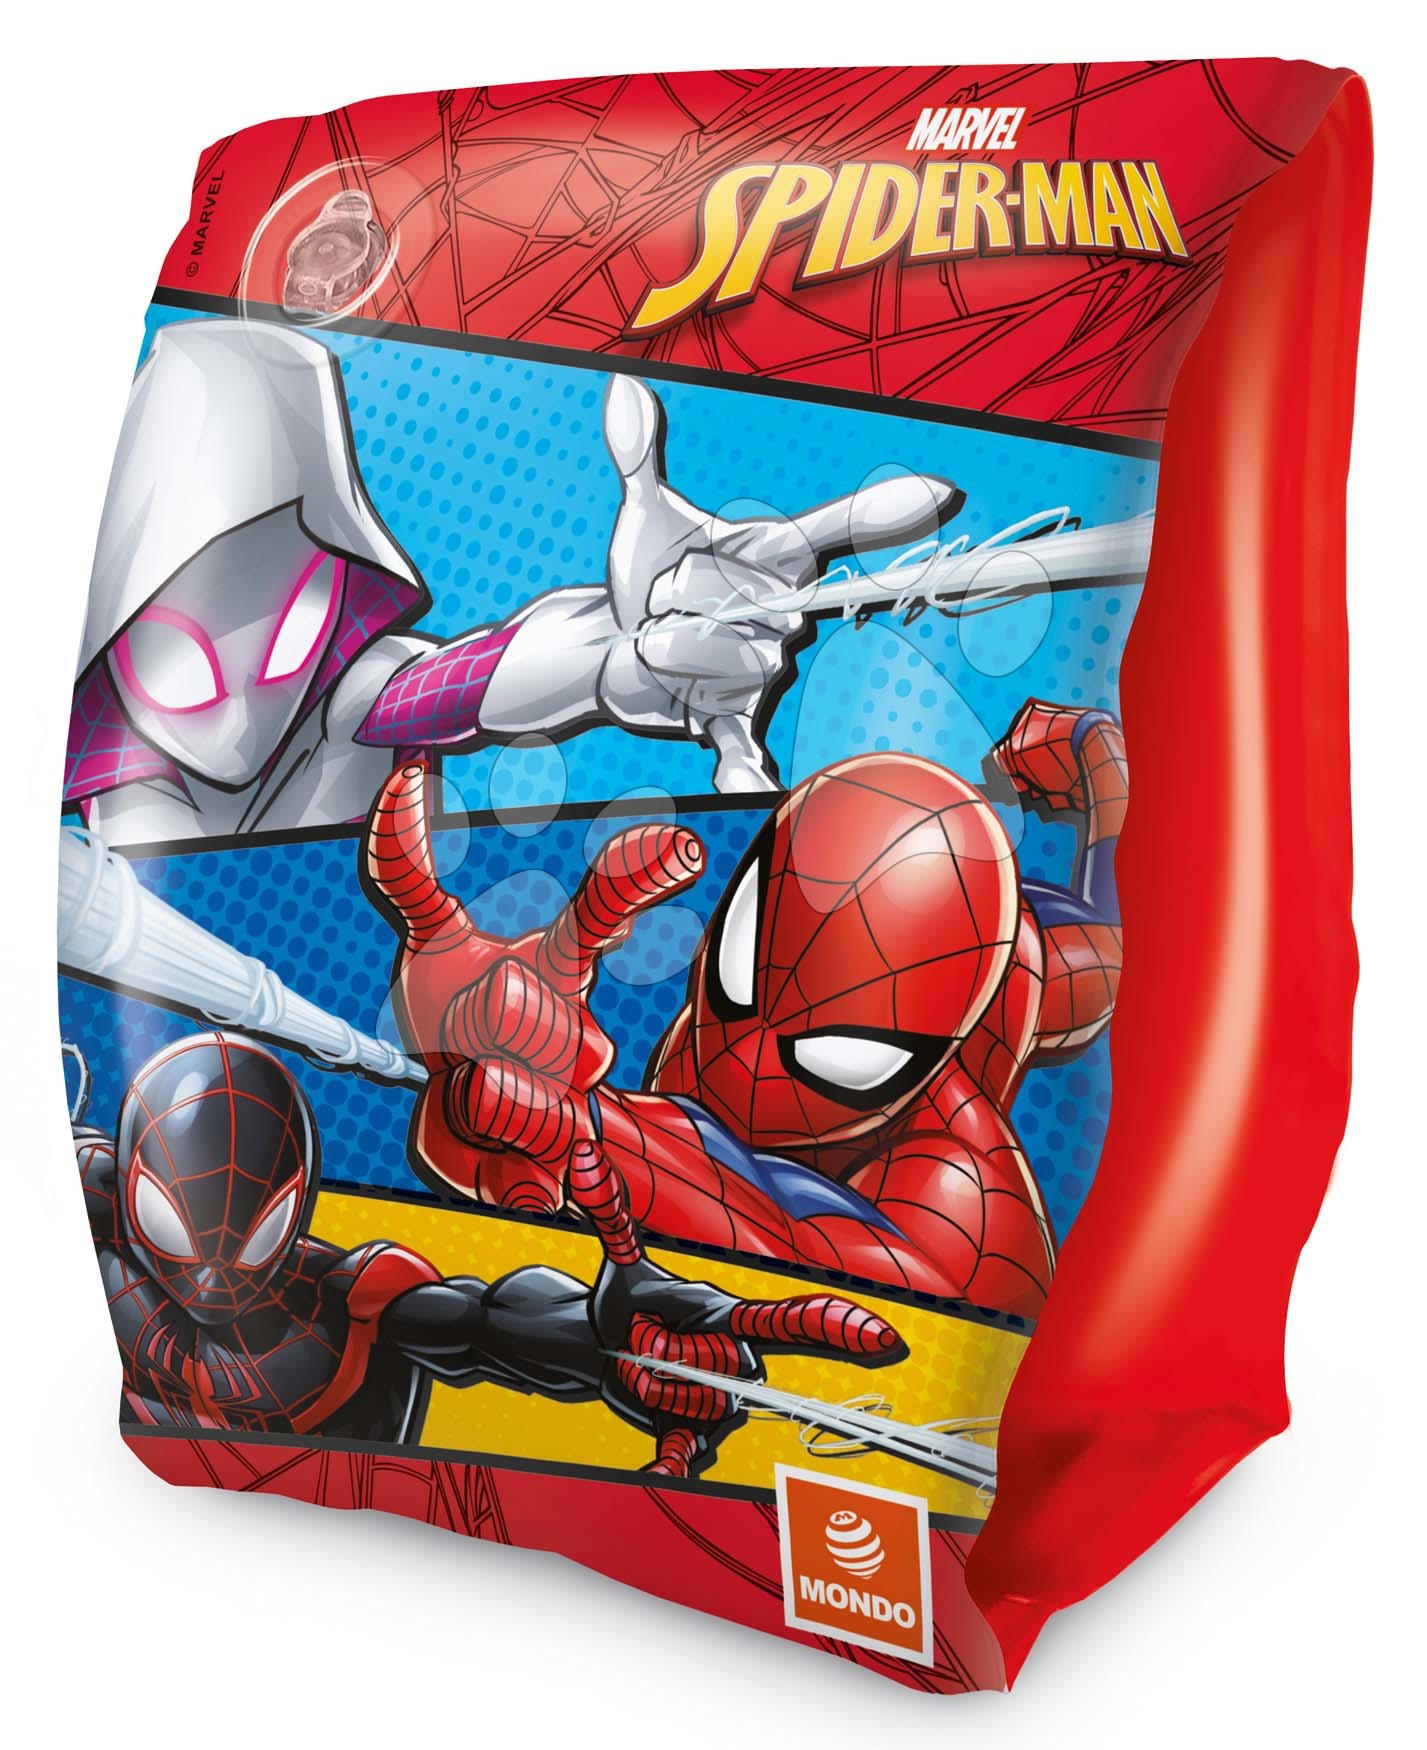 Felfújható karúszók Spiderman Mondo 2-6 évtől